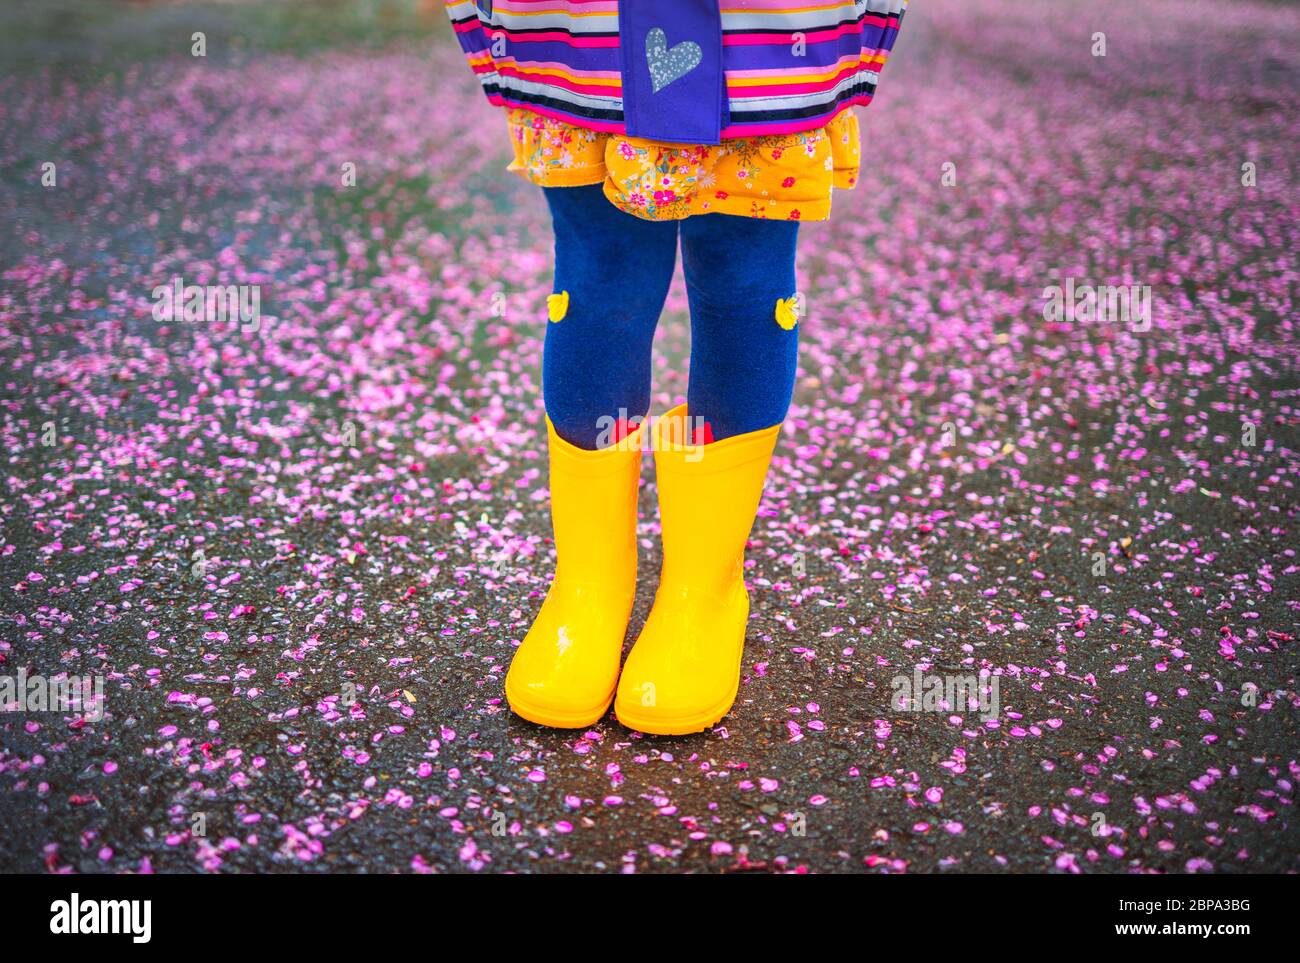 ayudante Cereza En honor Niña con botas amarillas de goma caminando en el parque después de la lluvia.  Niño jugando en el fondo de flores de árbol caídas Fotografía de stock -  Alamy